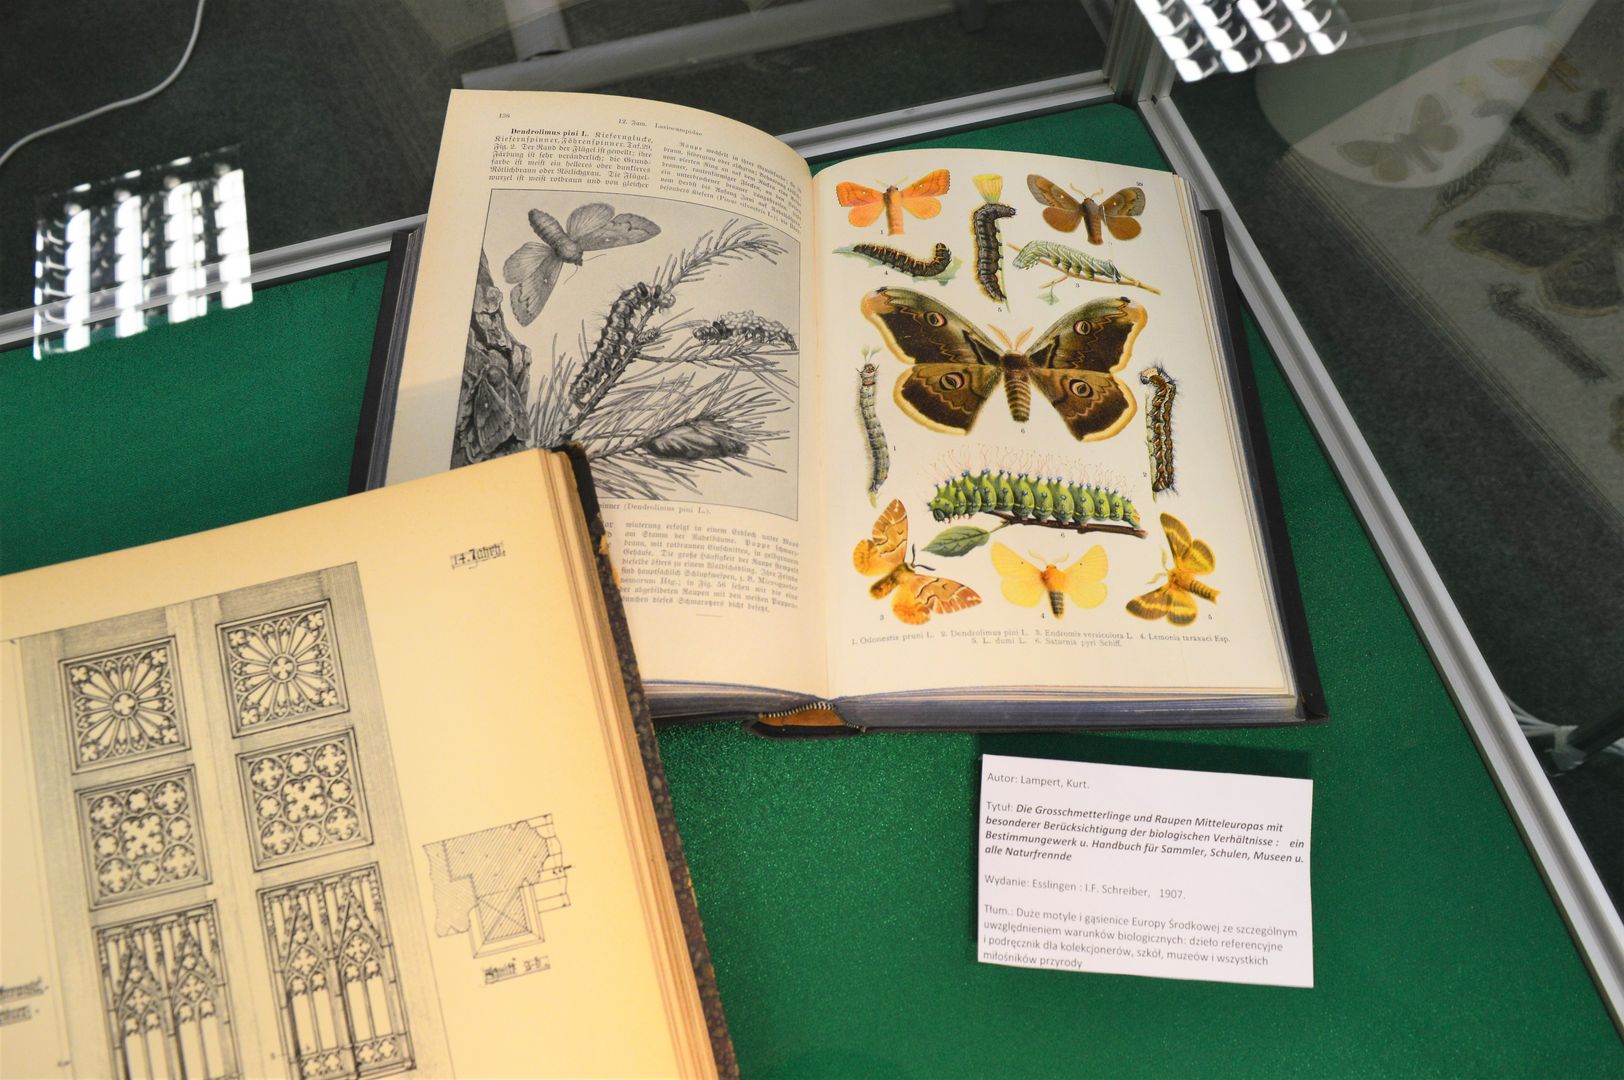 Kolorowa rycina przedstawiająca motyle i gąsięnnice z książki na temat entomologii